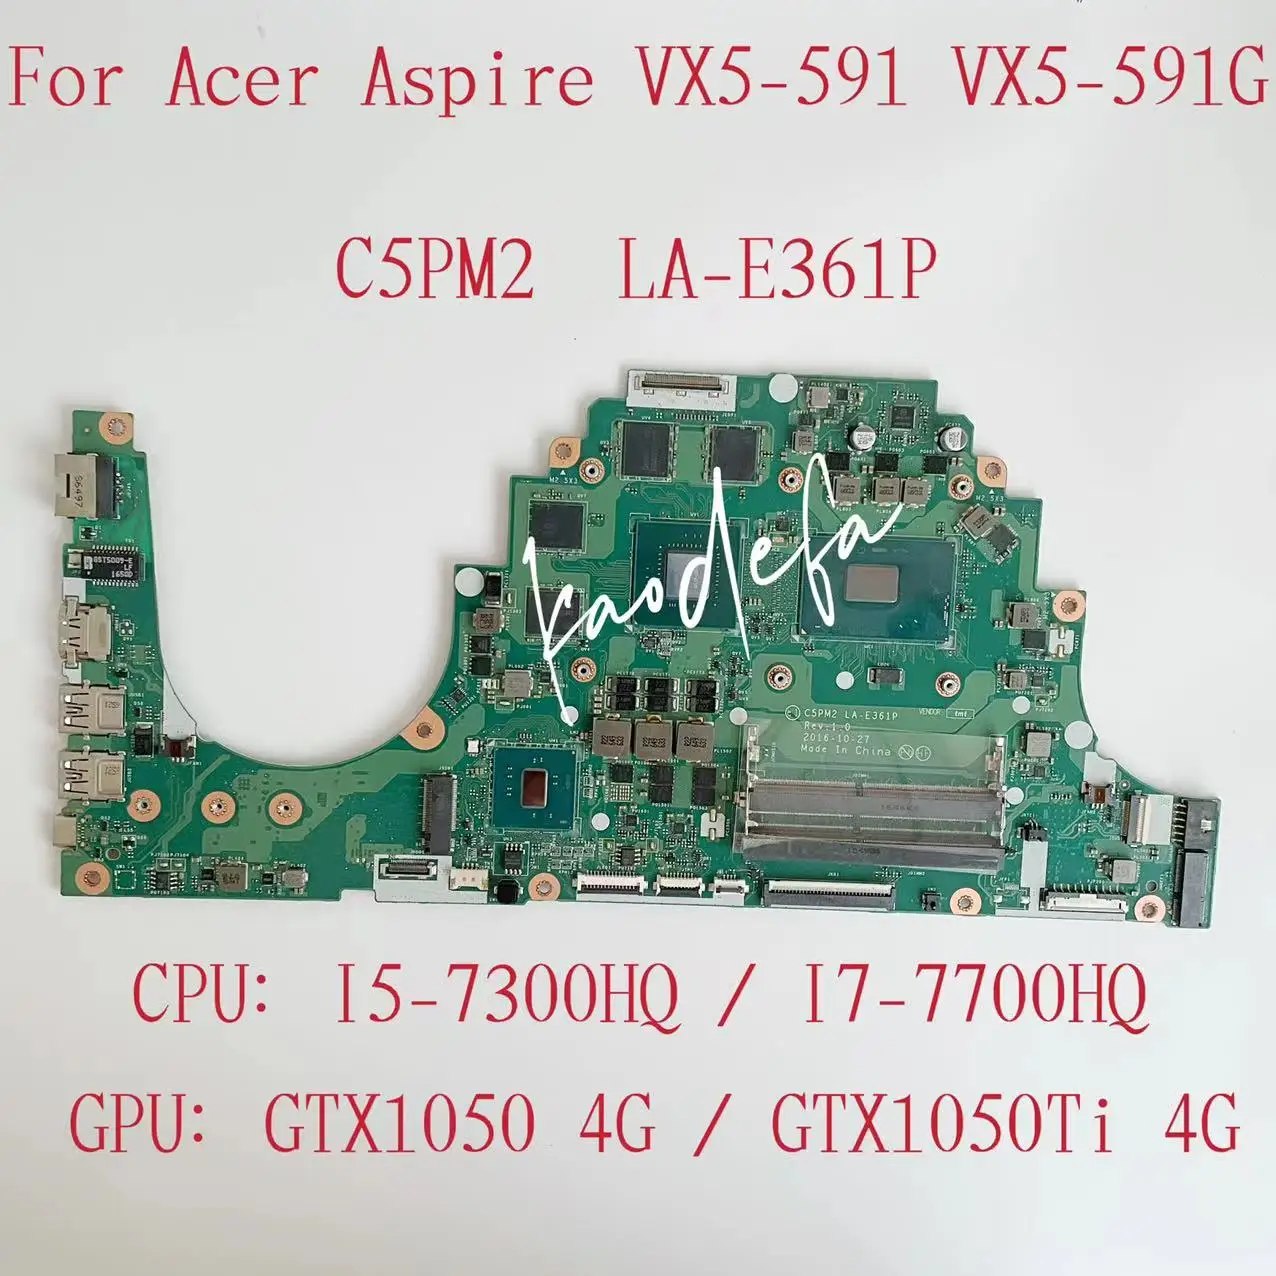 C5PM2 LA-E361P Boîte principale pour Acer Aspire VX5-591 Ordinateur d'ordinateur portable CPU I5-7300HQ / I7-7700HQ GPU: GTX1050 / 1050Ti 4G Test OK